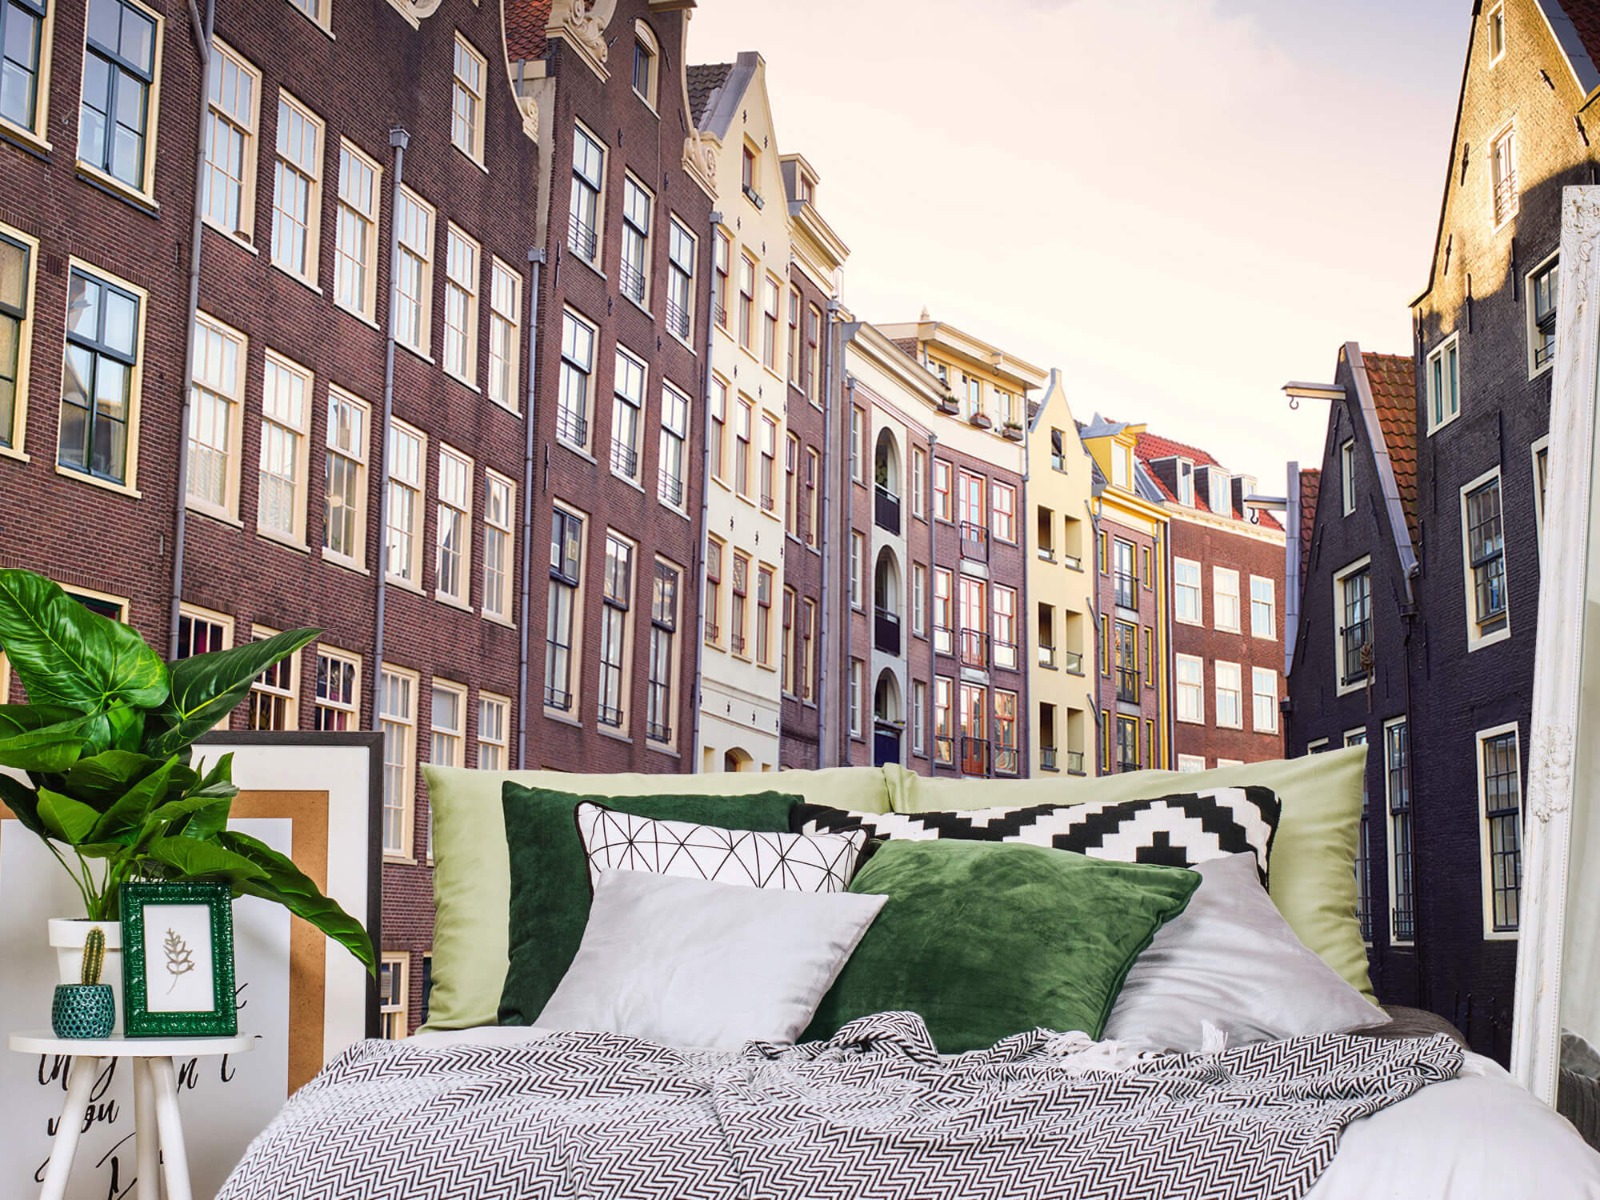 Gebouwen - Amsterdamse huizen aan de gracht - Tienerkamer 13